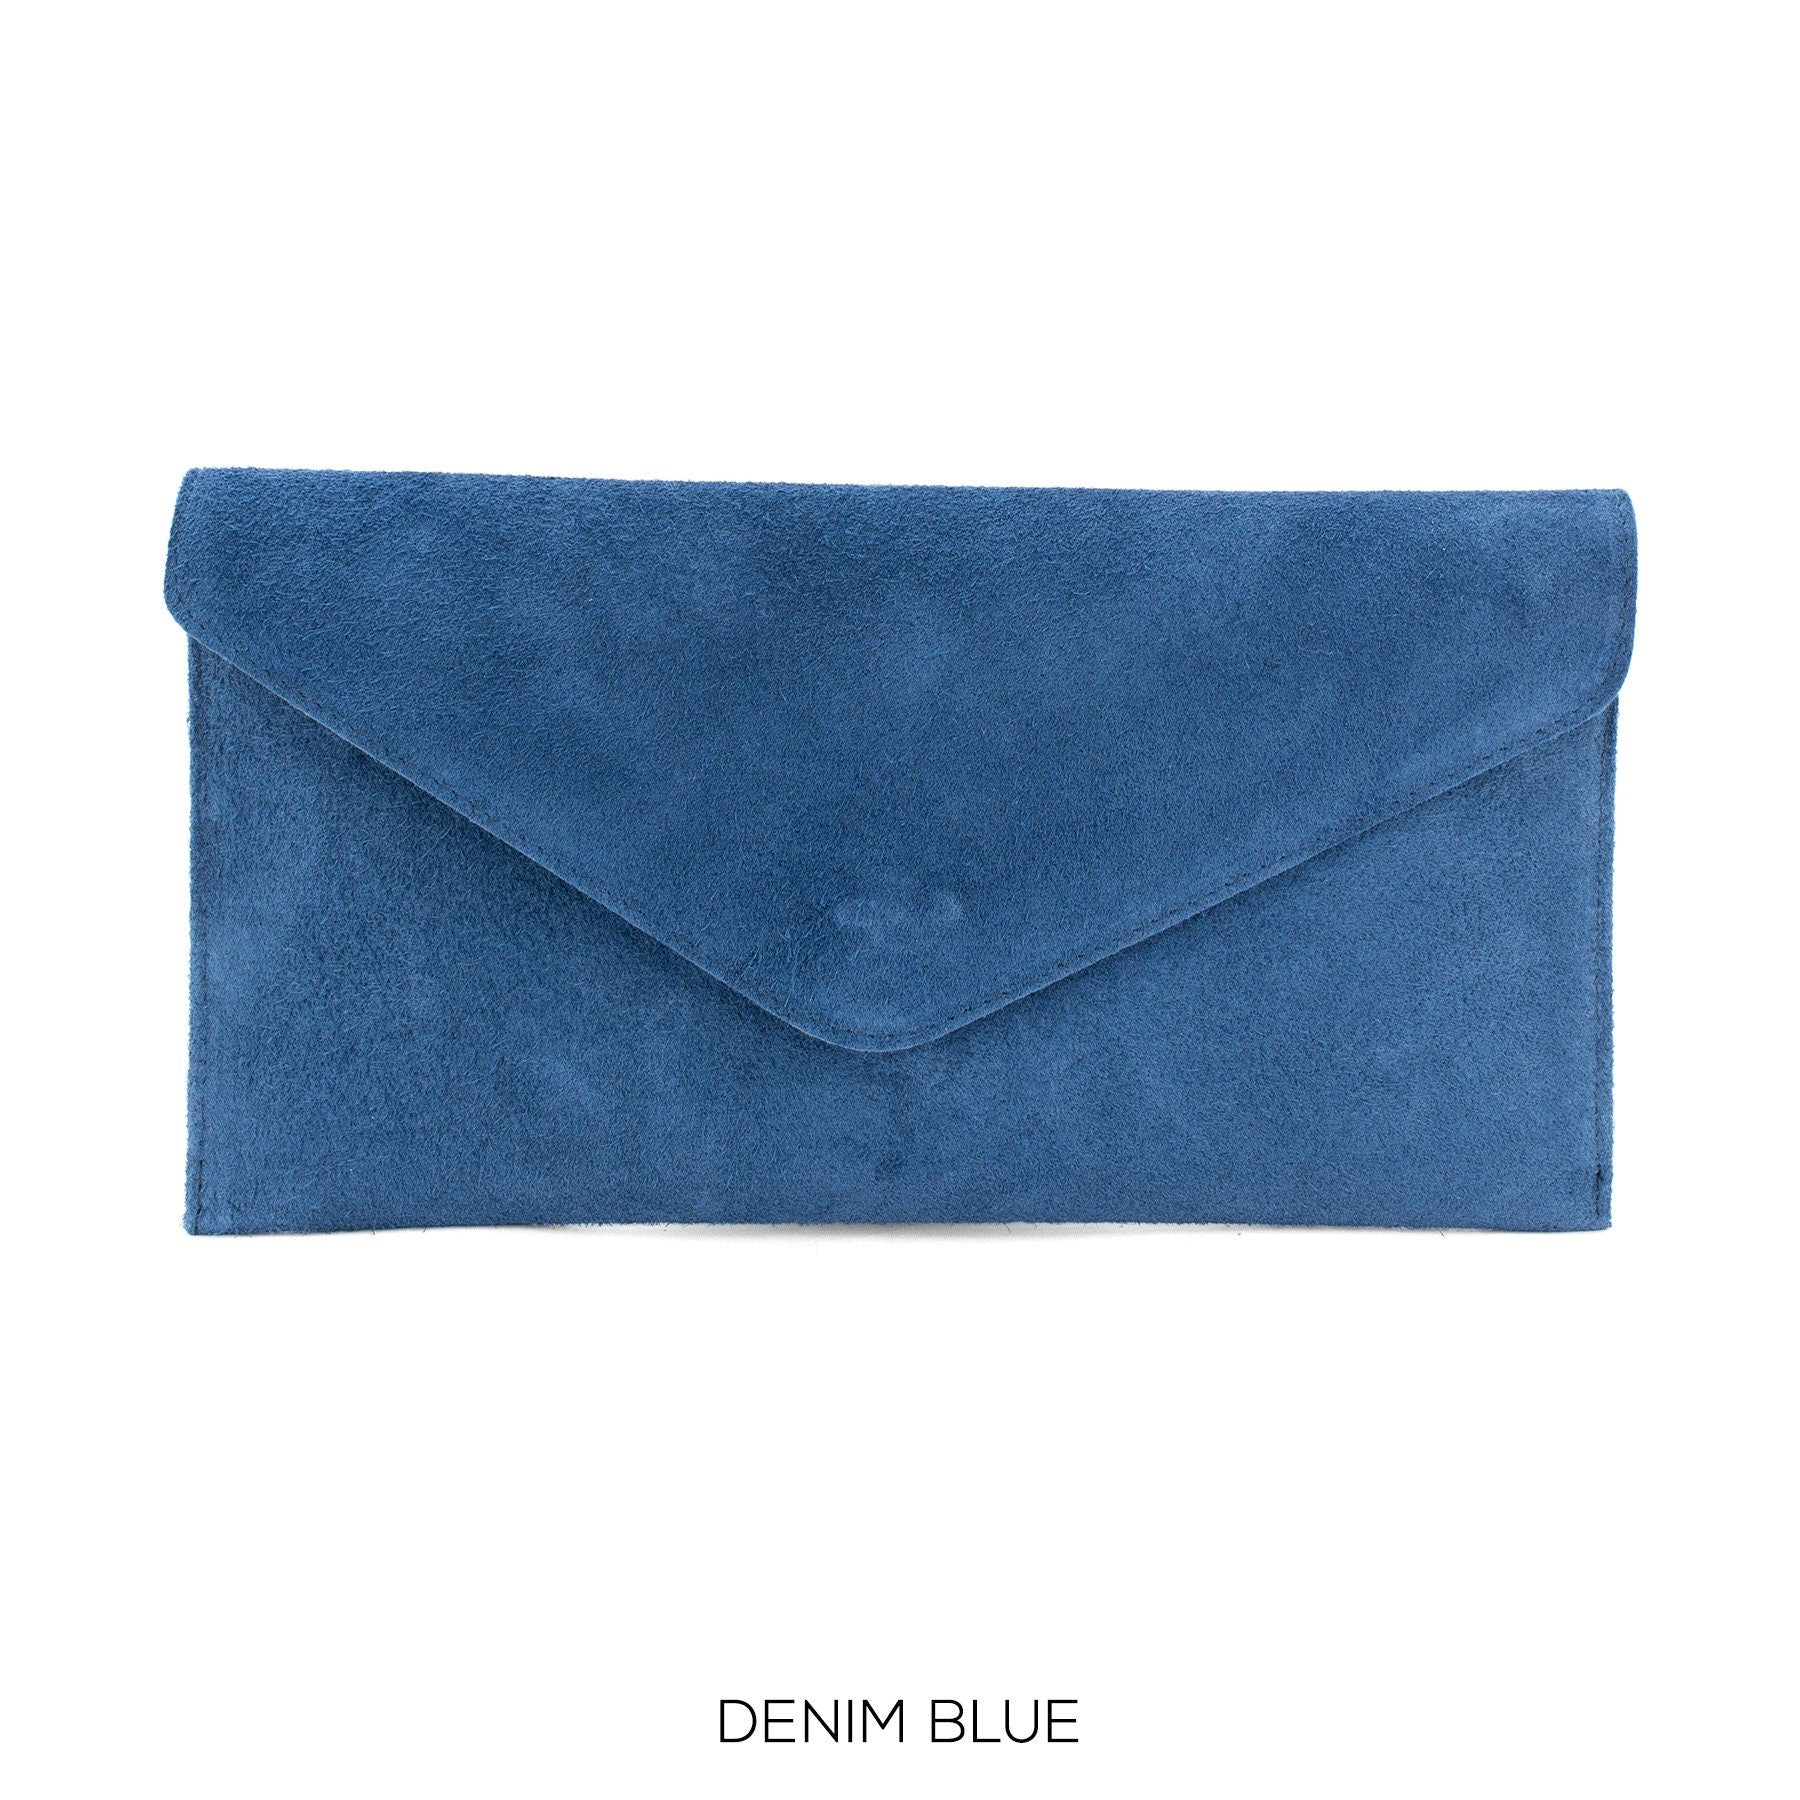 Denim Blue envelope clutch bag